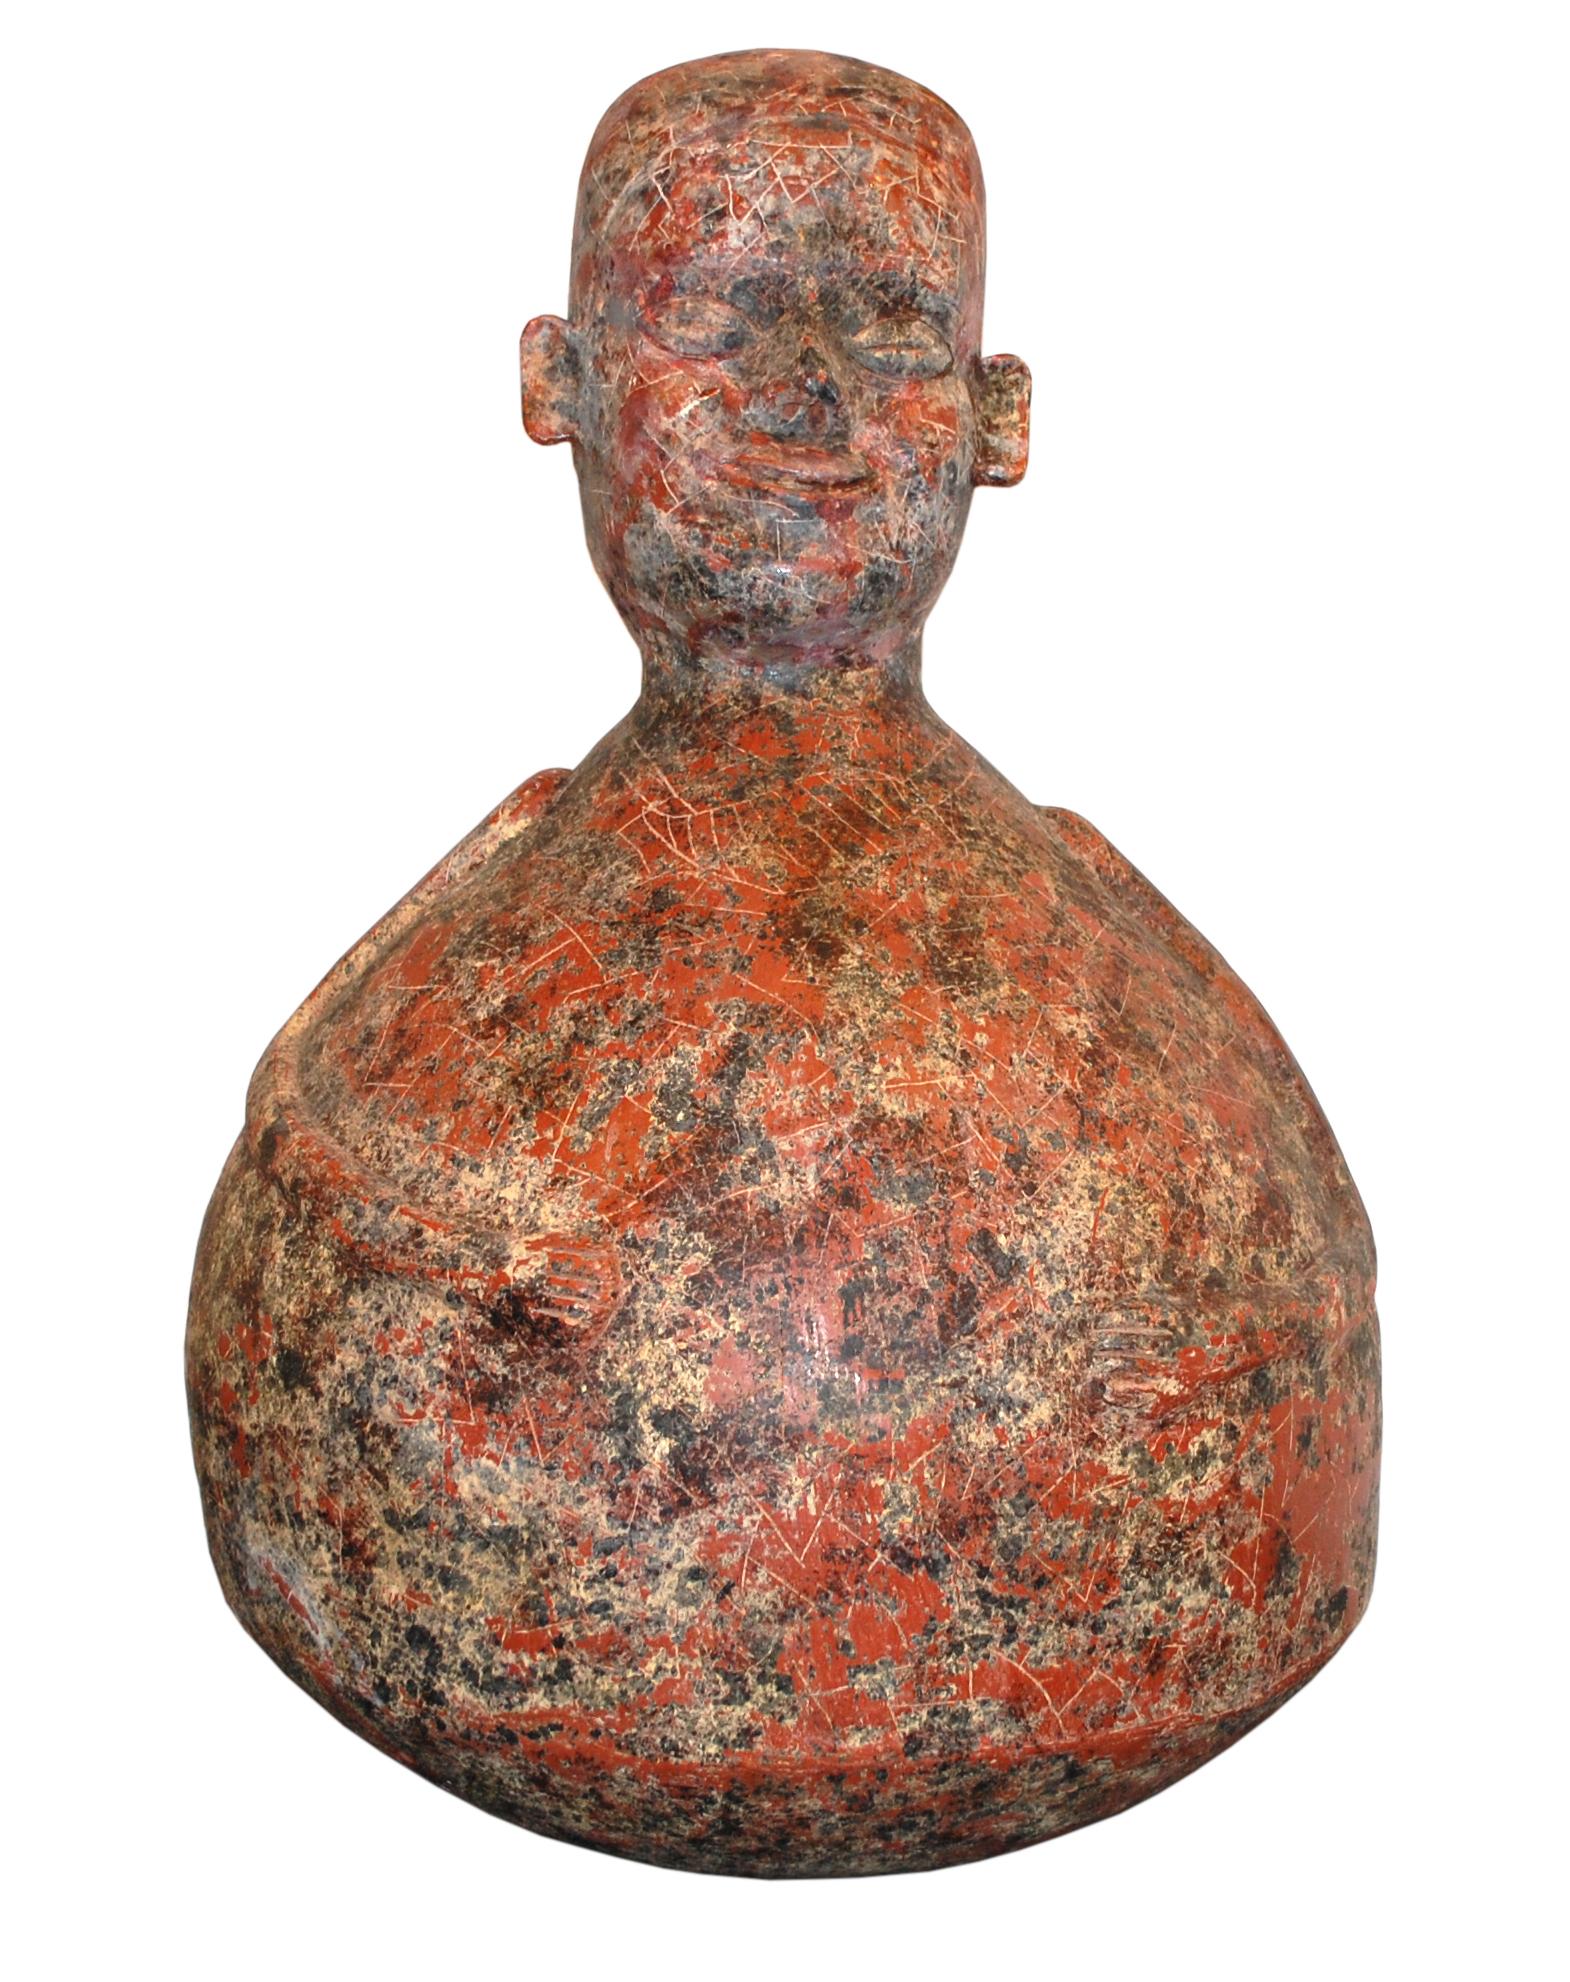  Großer Pre-Columbian Stil Ton, Terrakotta  Skulptur
 Limitierte Auflage 6/30, signiert.

Walter Bastianetto, wurde in Venedig, Italien, geboren. Er ist Absolvent der Hochschule für Architektur Ca' Foscari in Venedig und nahm an verschiedenen Kunst-